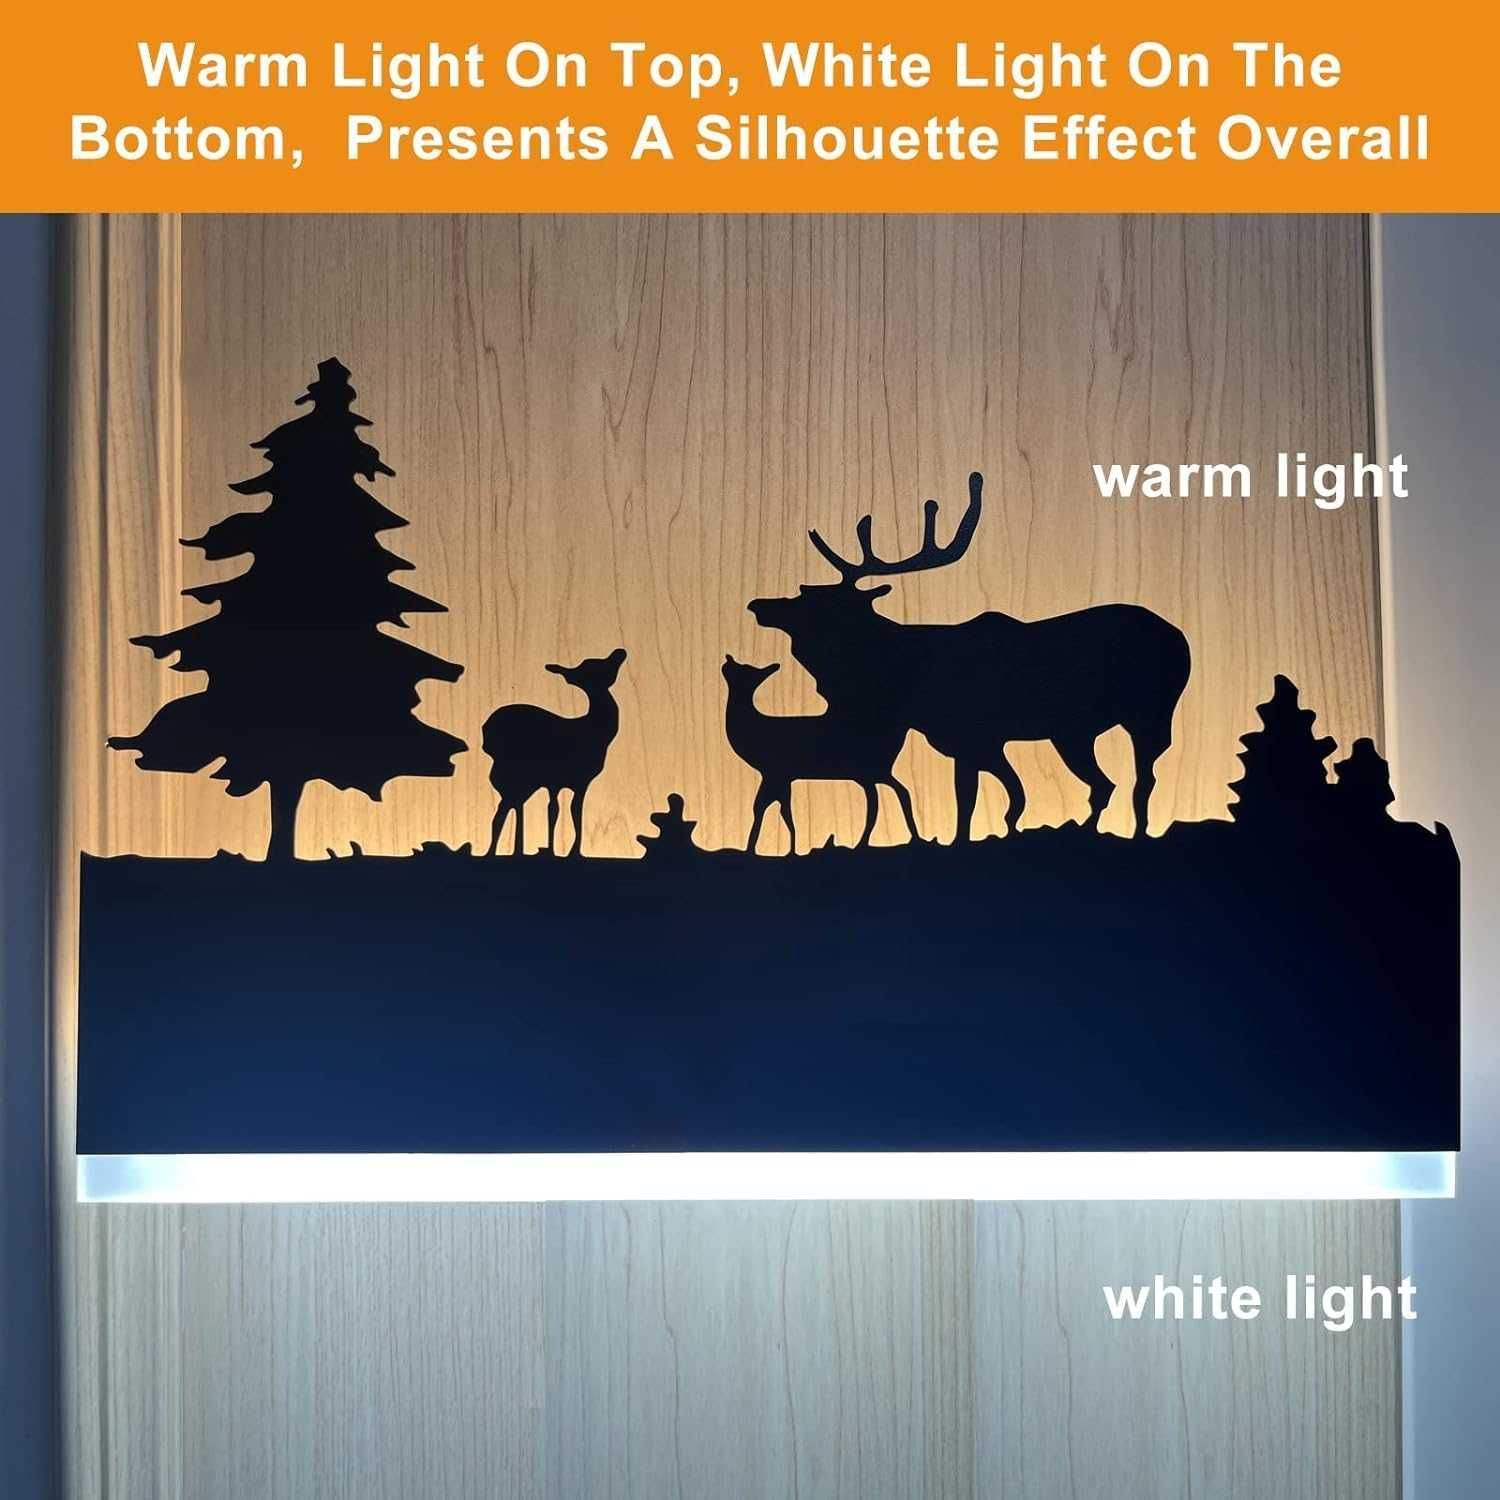 FYLARY LED стенна лампа, 12 W (горски елен)